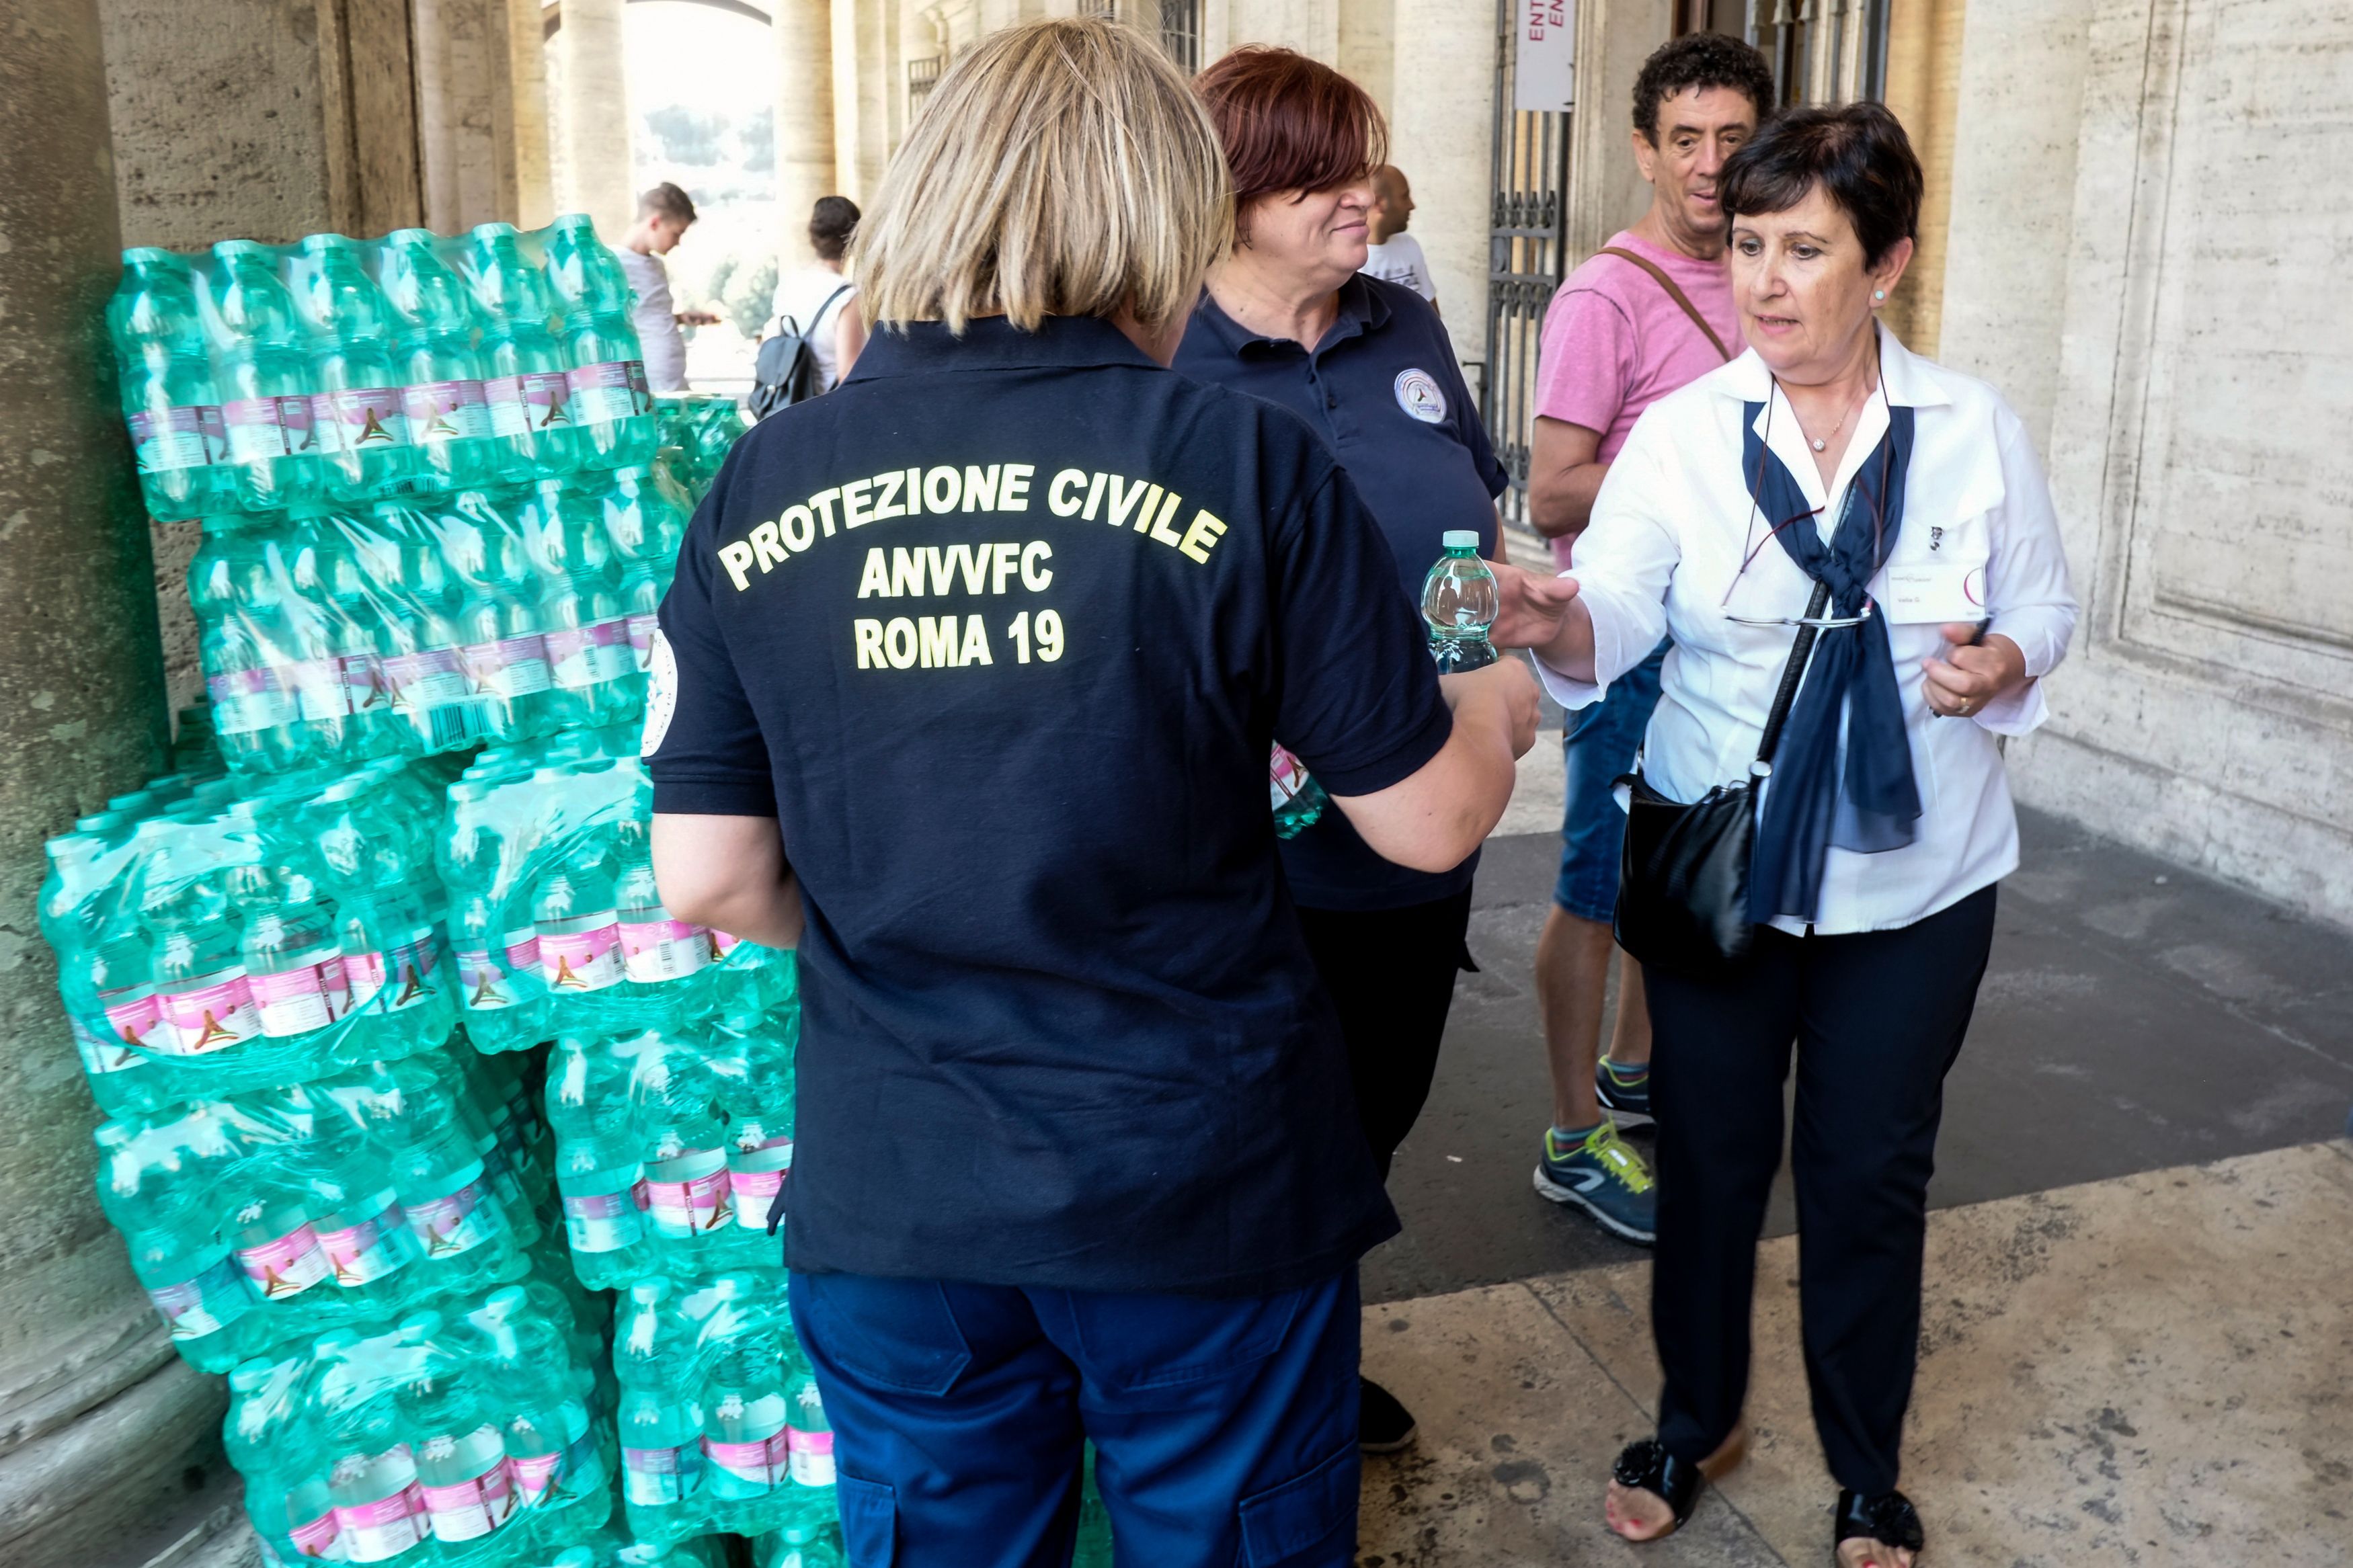 زجاجات مياه مجانية للسياح فى إيطاليا لمواجهة الحرارة المرتفعة